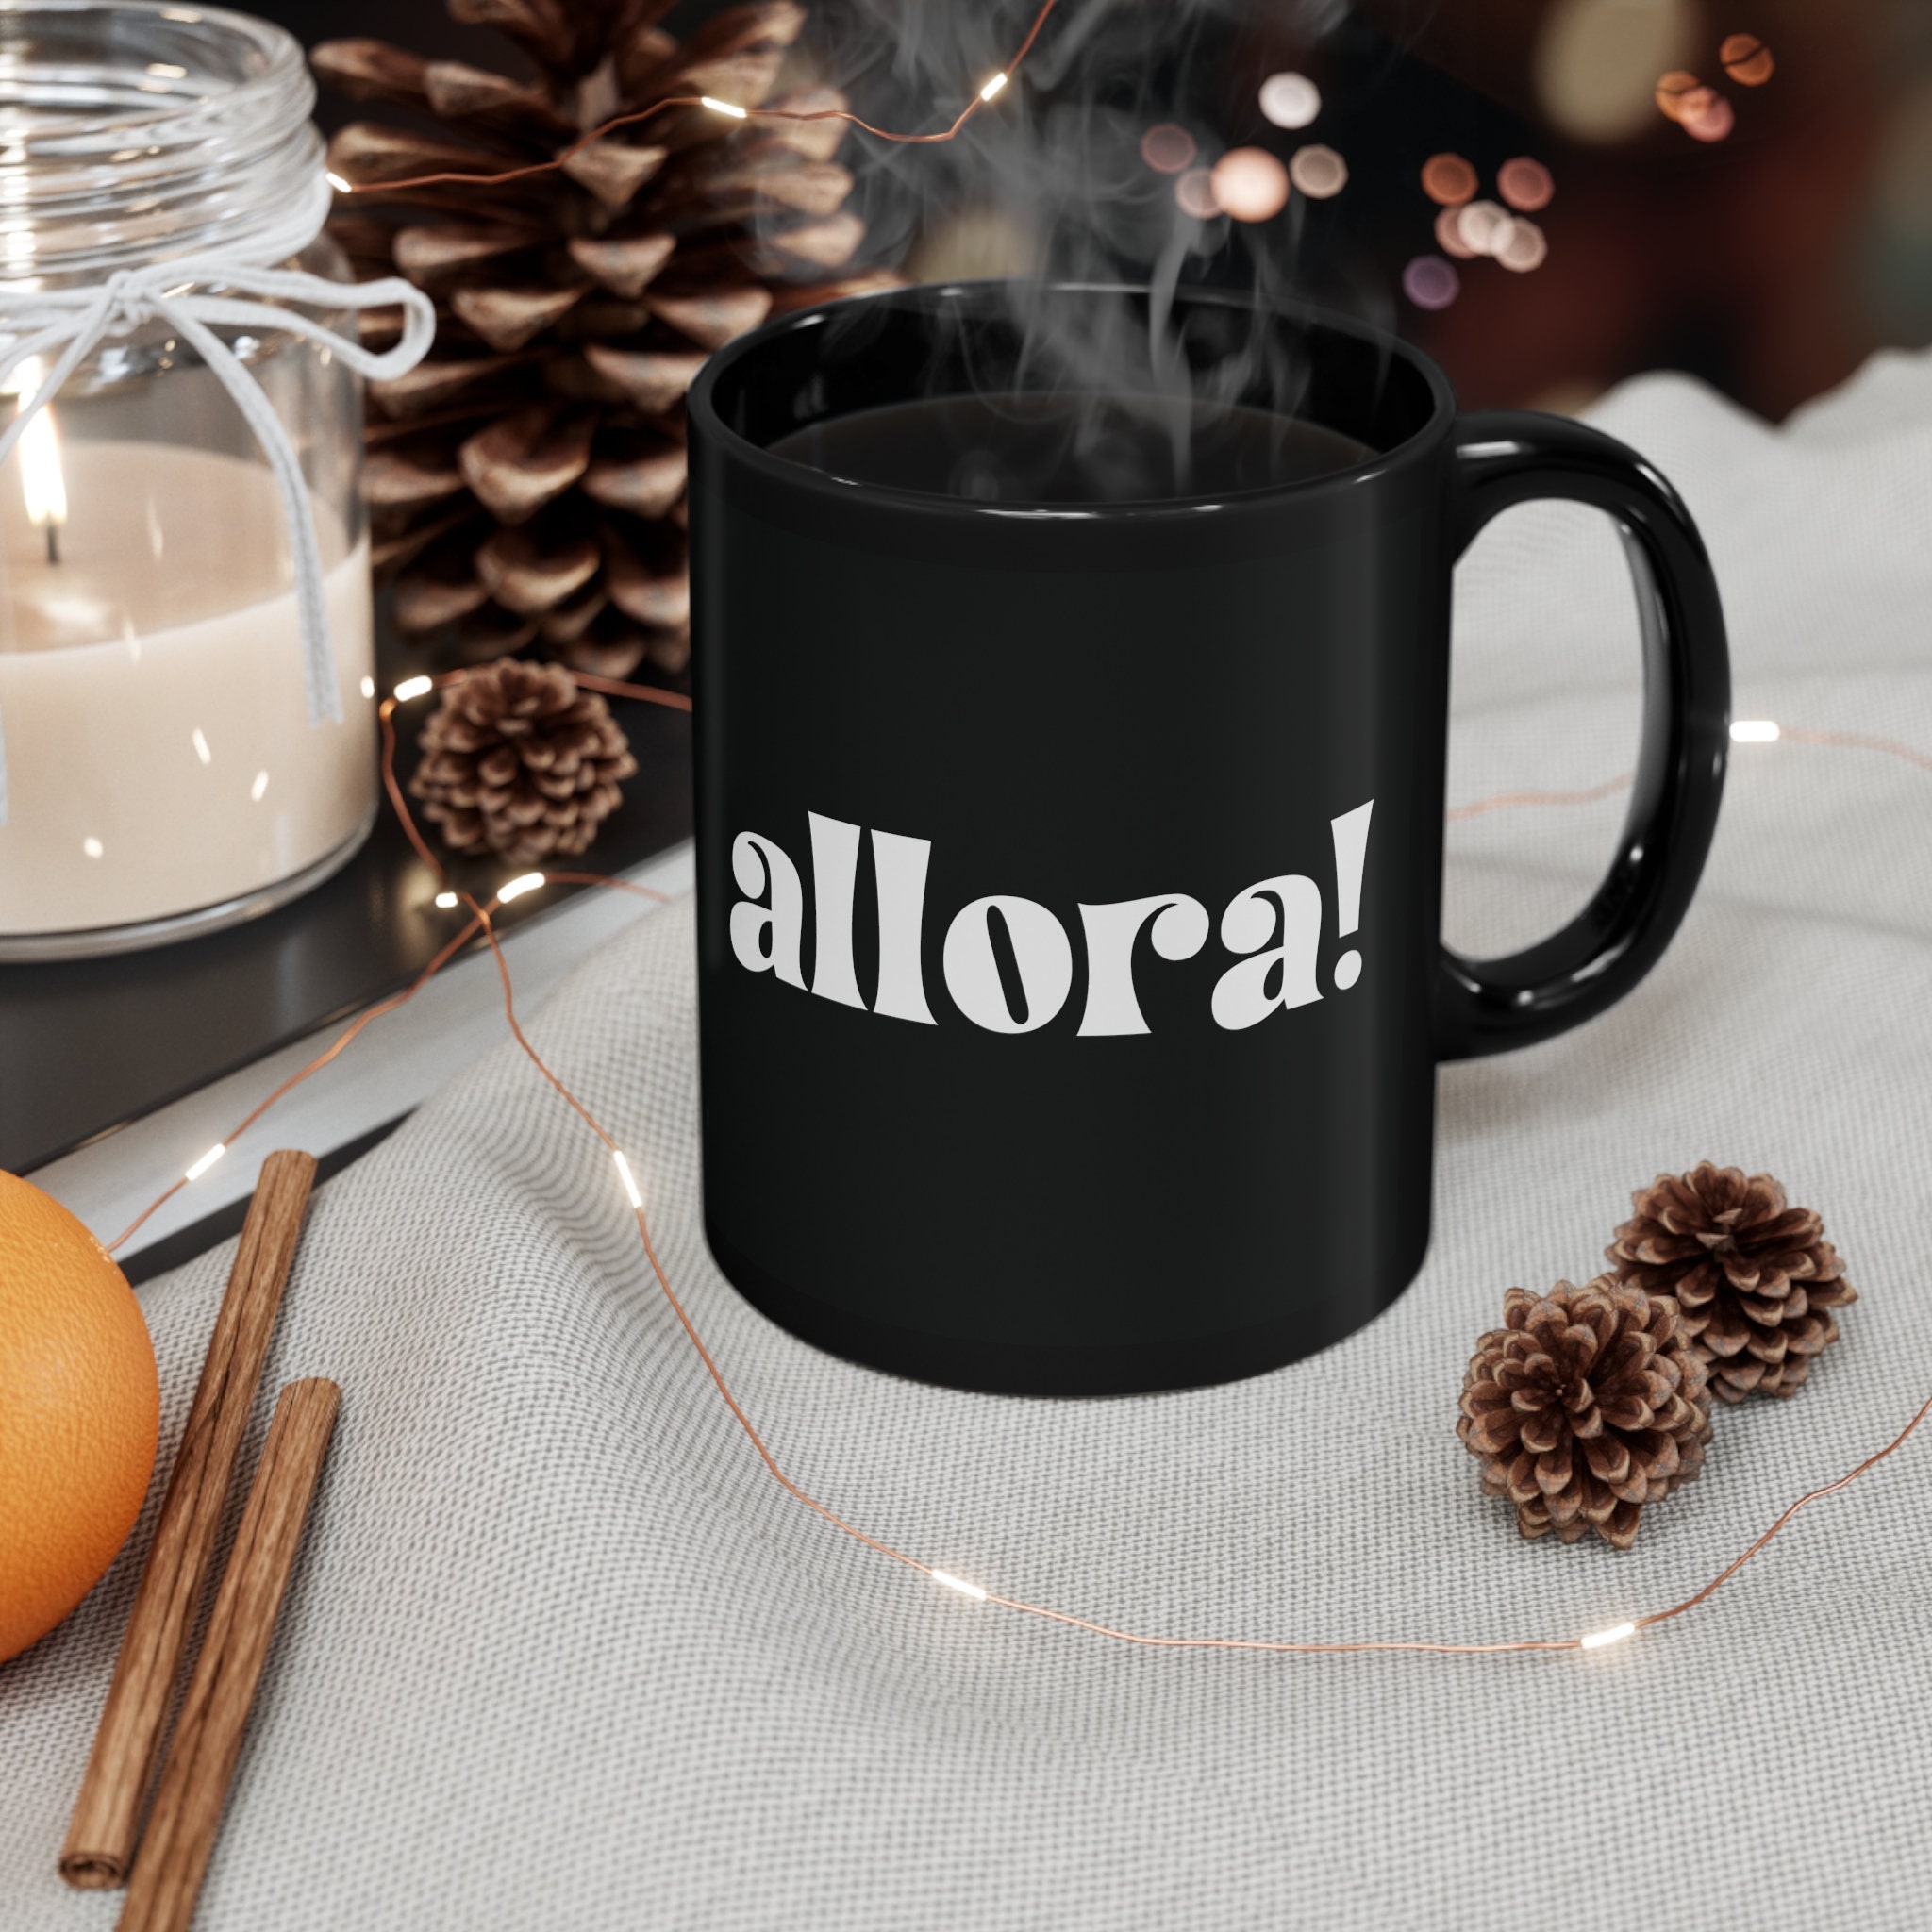 Italian Christmas mug I just want to go to Italy, Italy Xmas mug, Ital –  Italian Summers